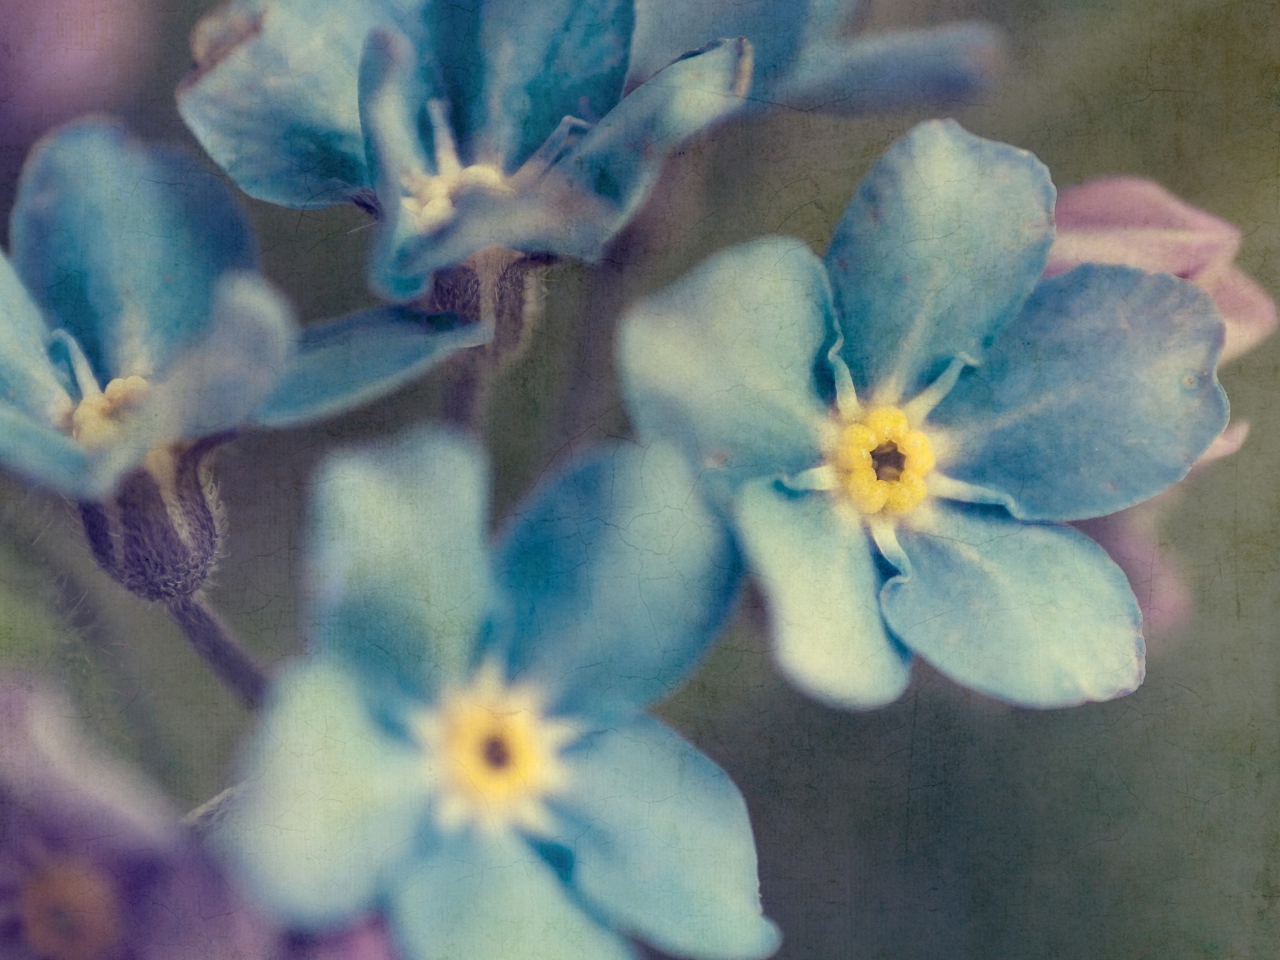 Das Blue Flowers Wallpaper 1280x960